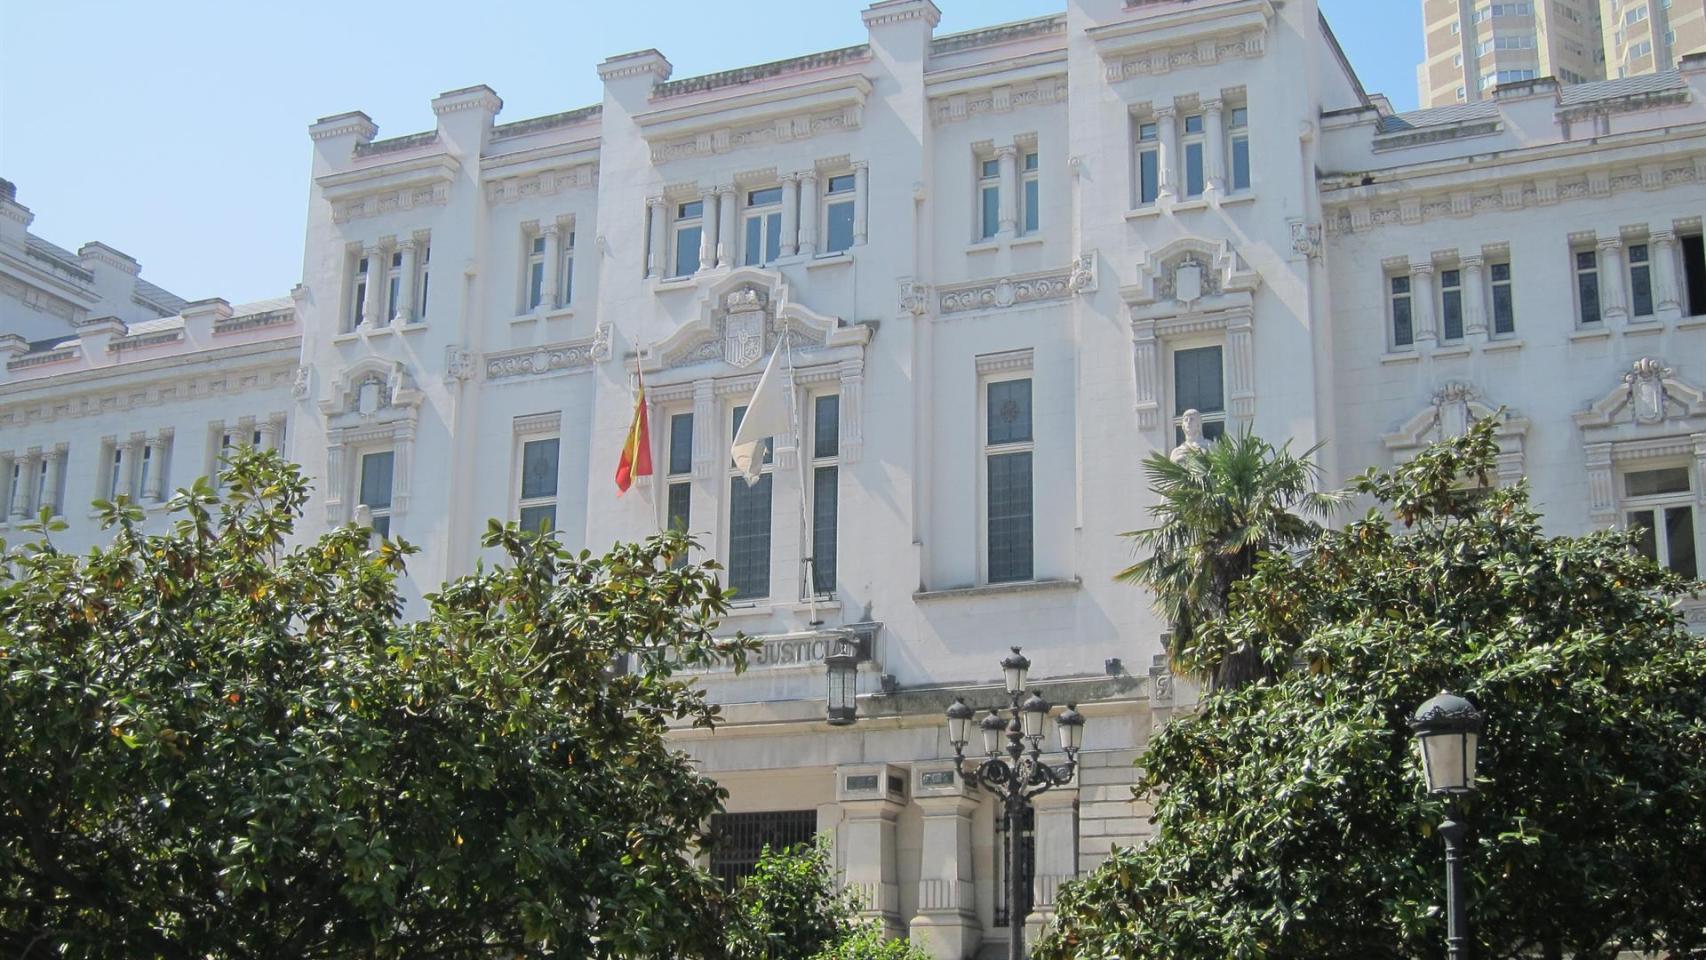 La sede del TSXG en A Coruña.